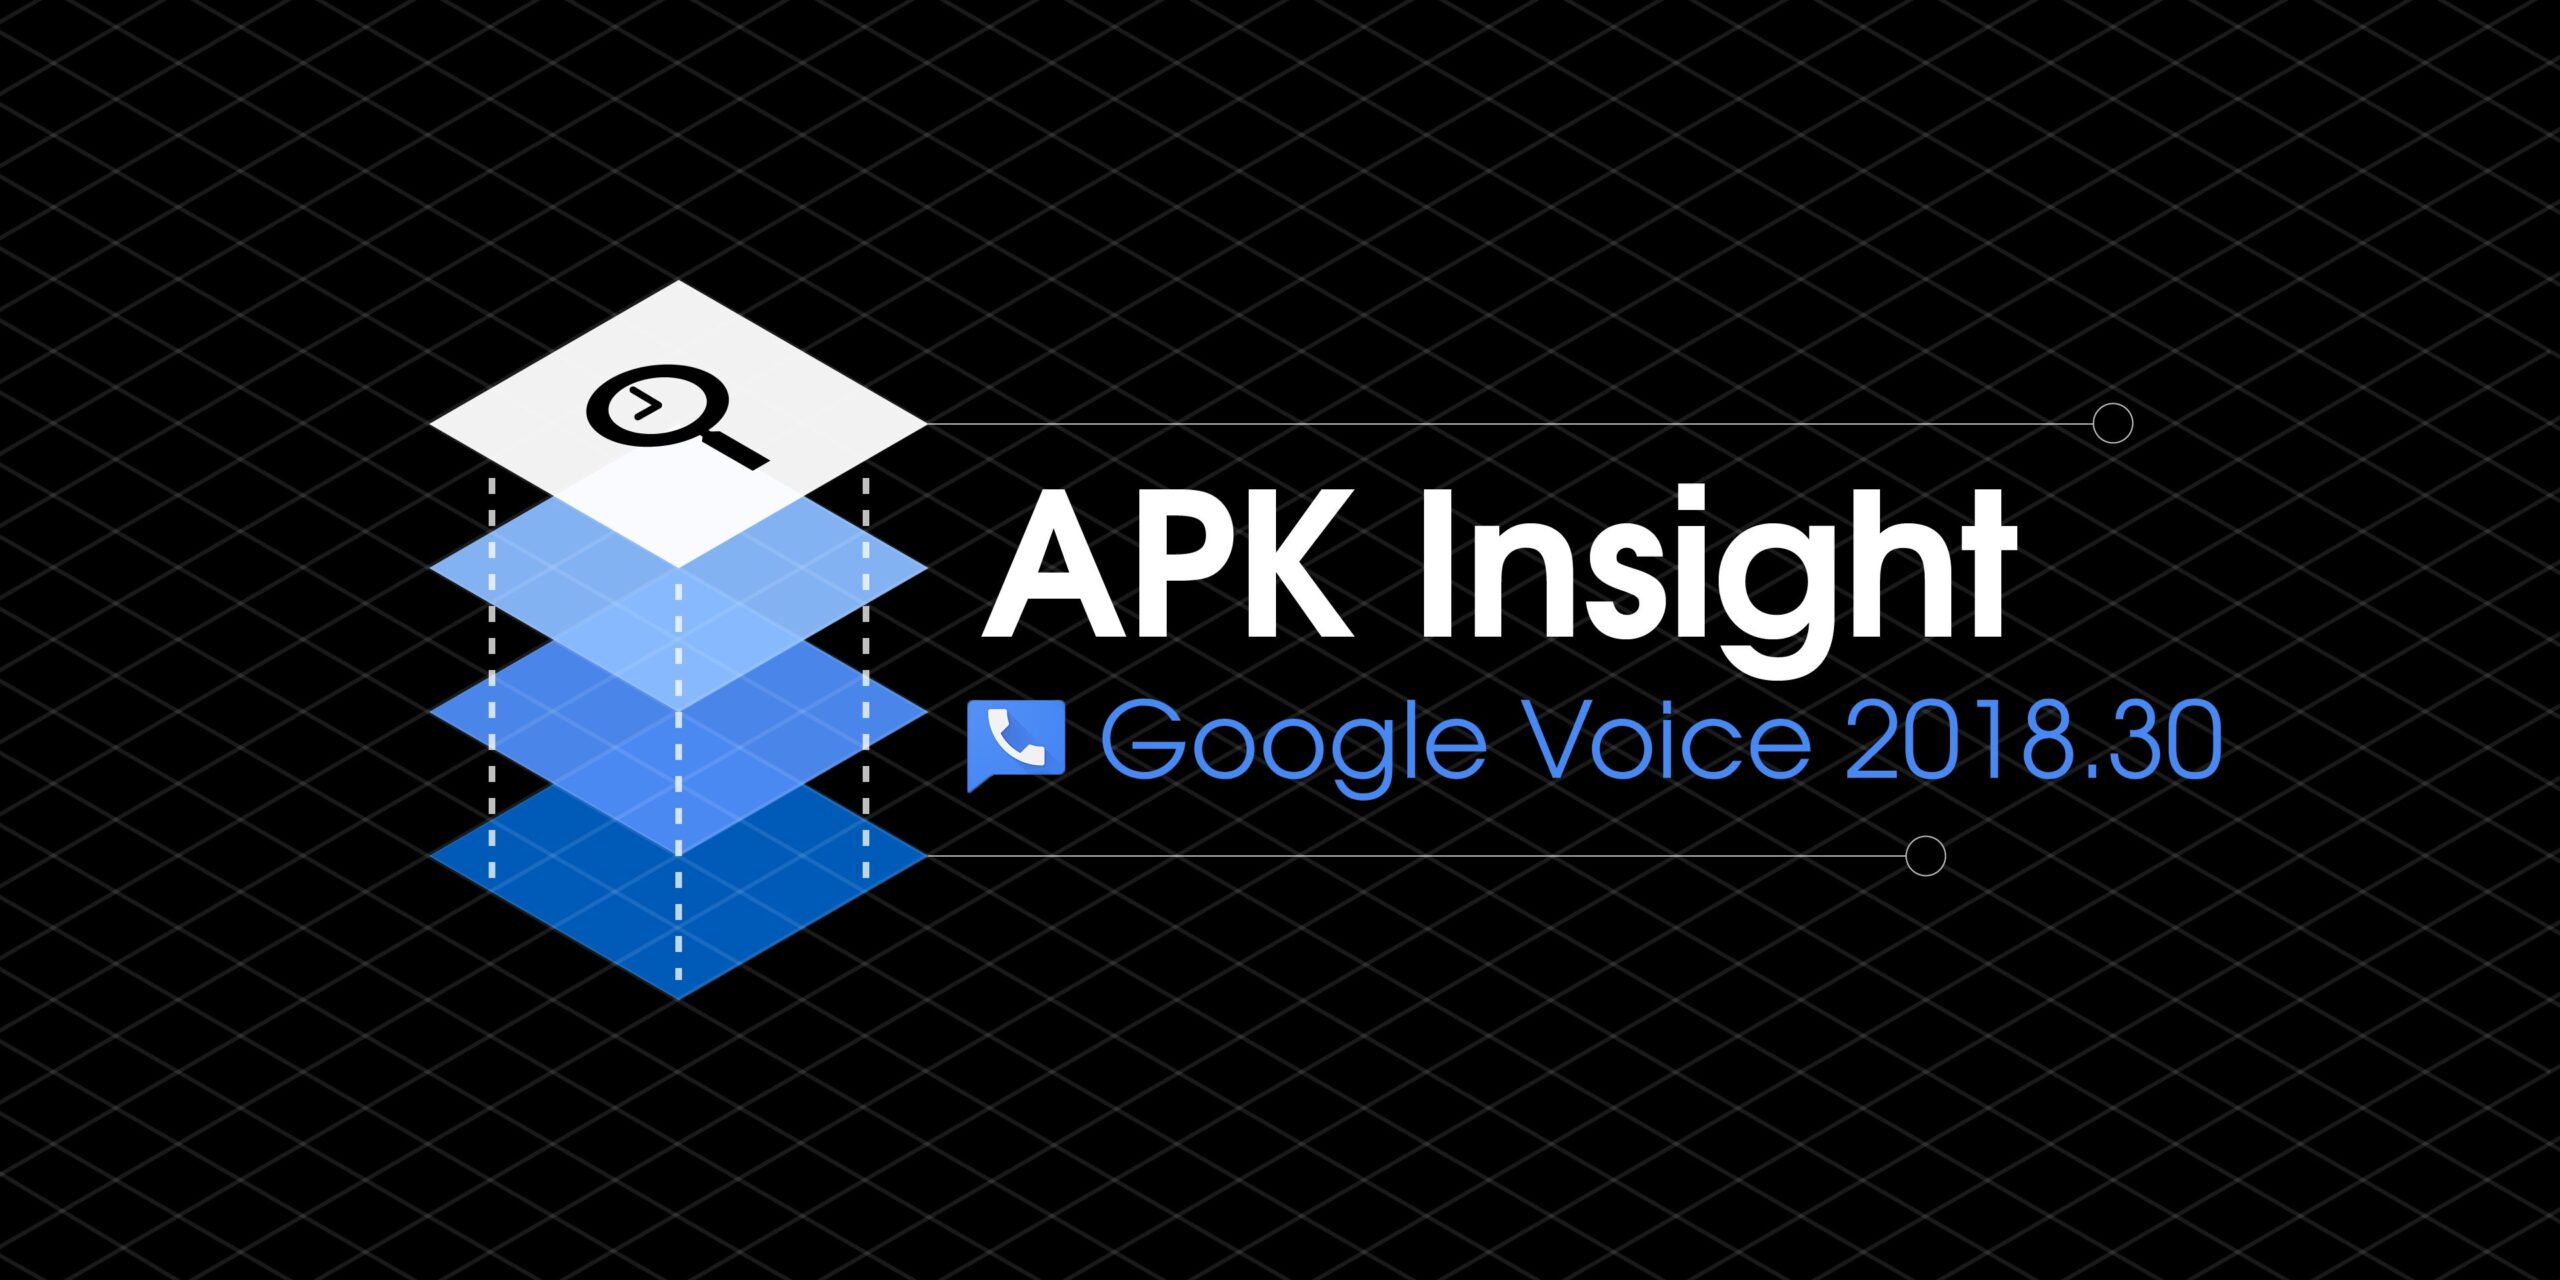 O Google Voice 2018.30 prepara a integração do Hangouts Meet & Calendar para G Suite, aprimora o DND [APK Insight]